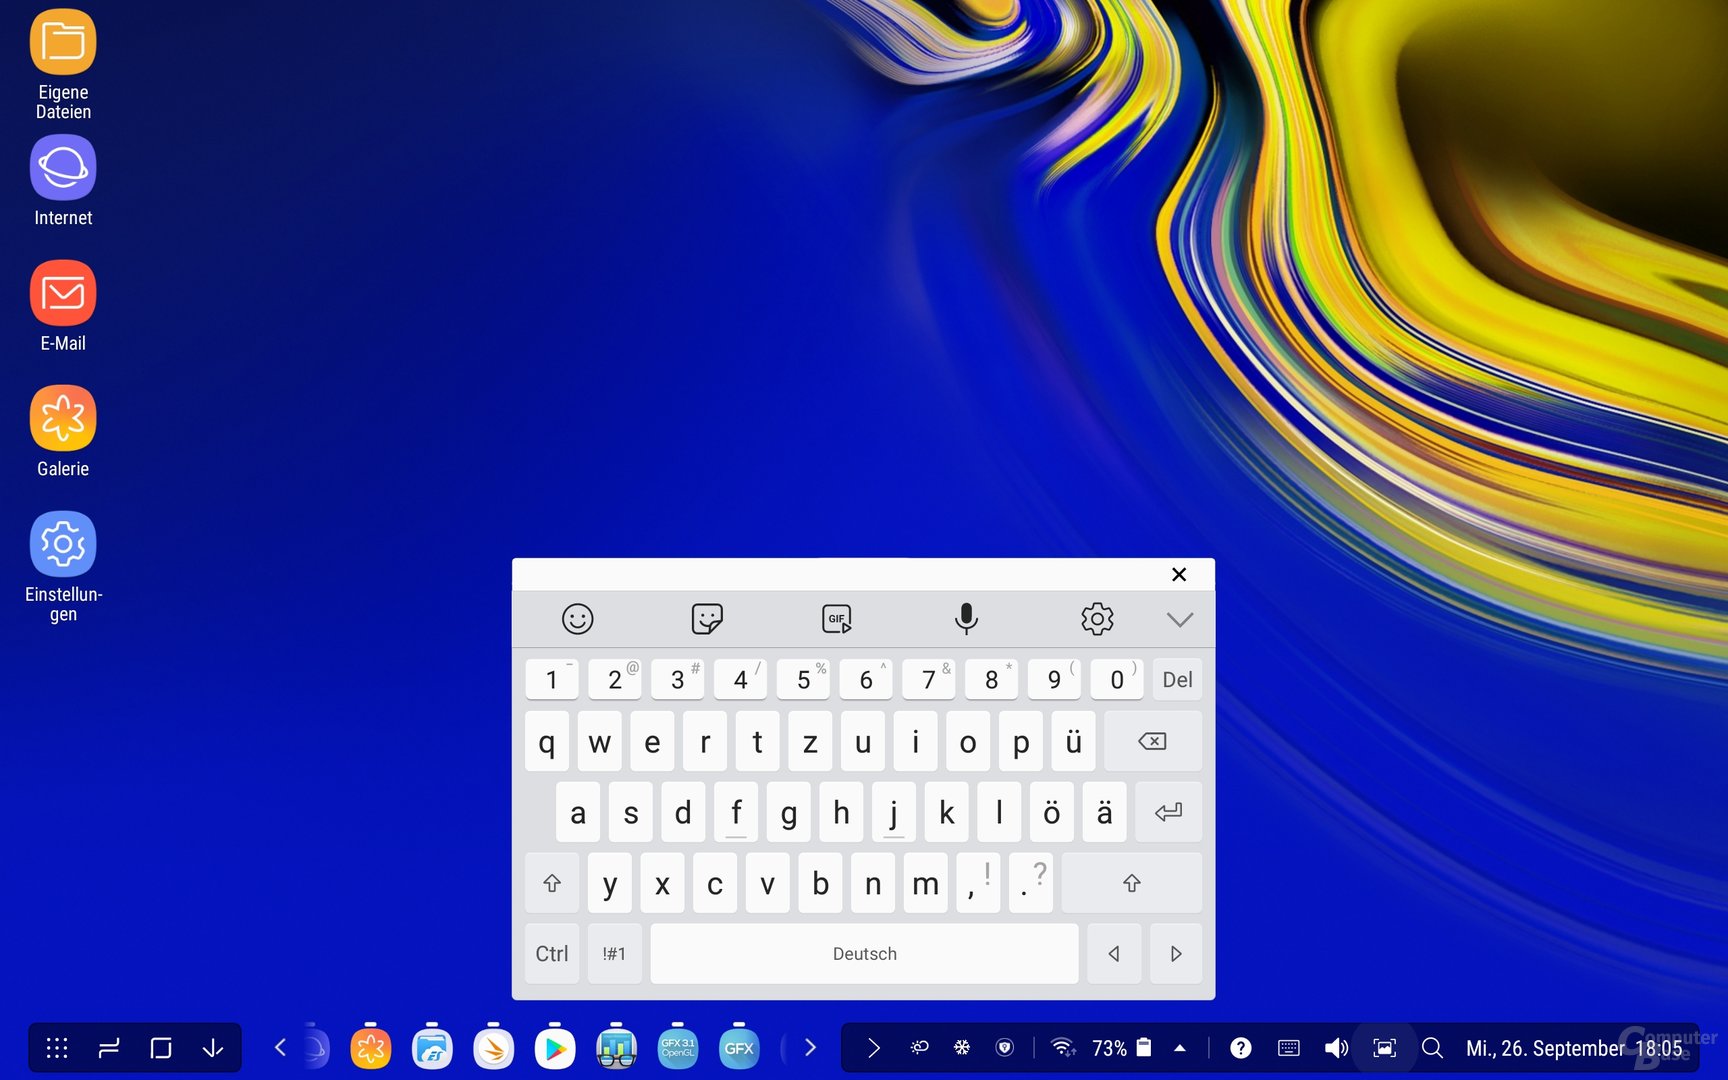 Der DeX sorgt beim Samsung Galaxy Tab S4 für eine Desktop-Umgebung